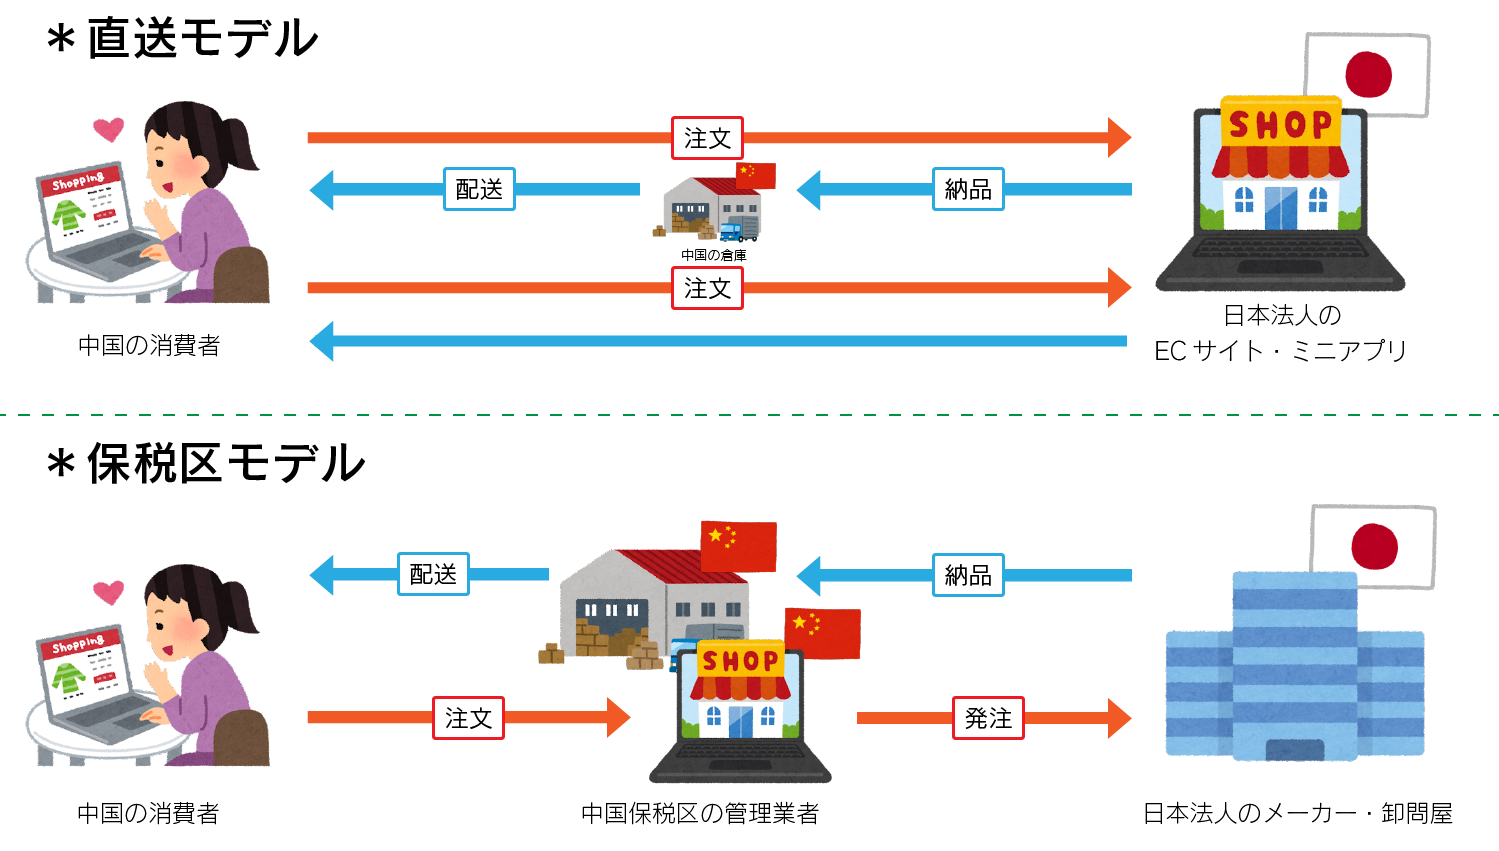 直送モデルと保税区モデルの図